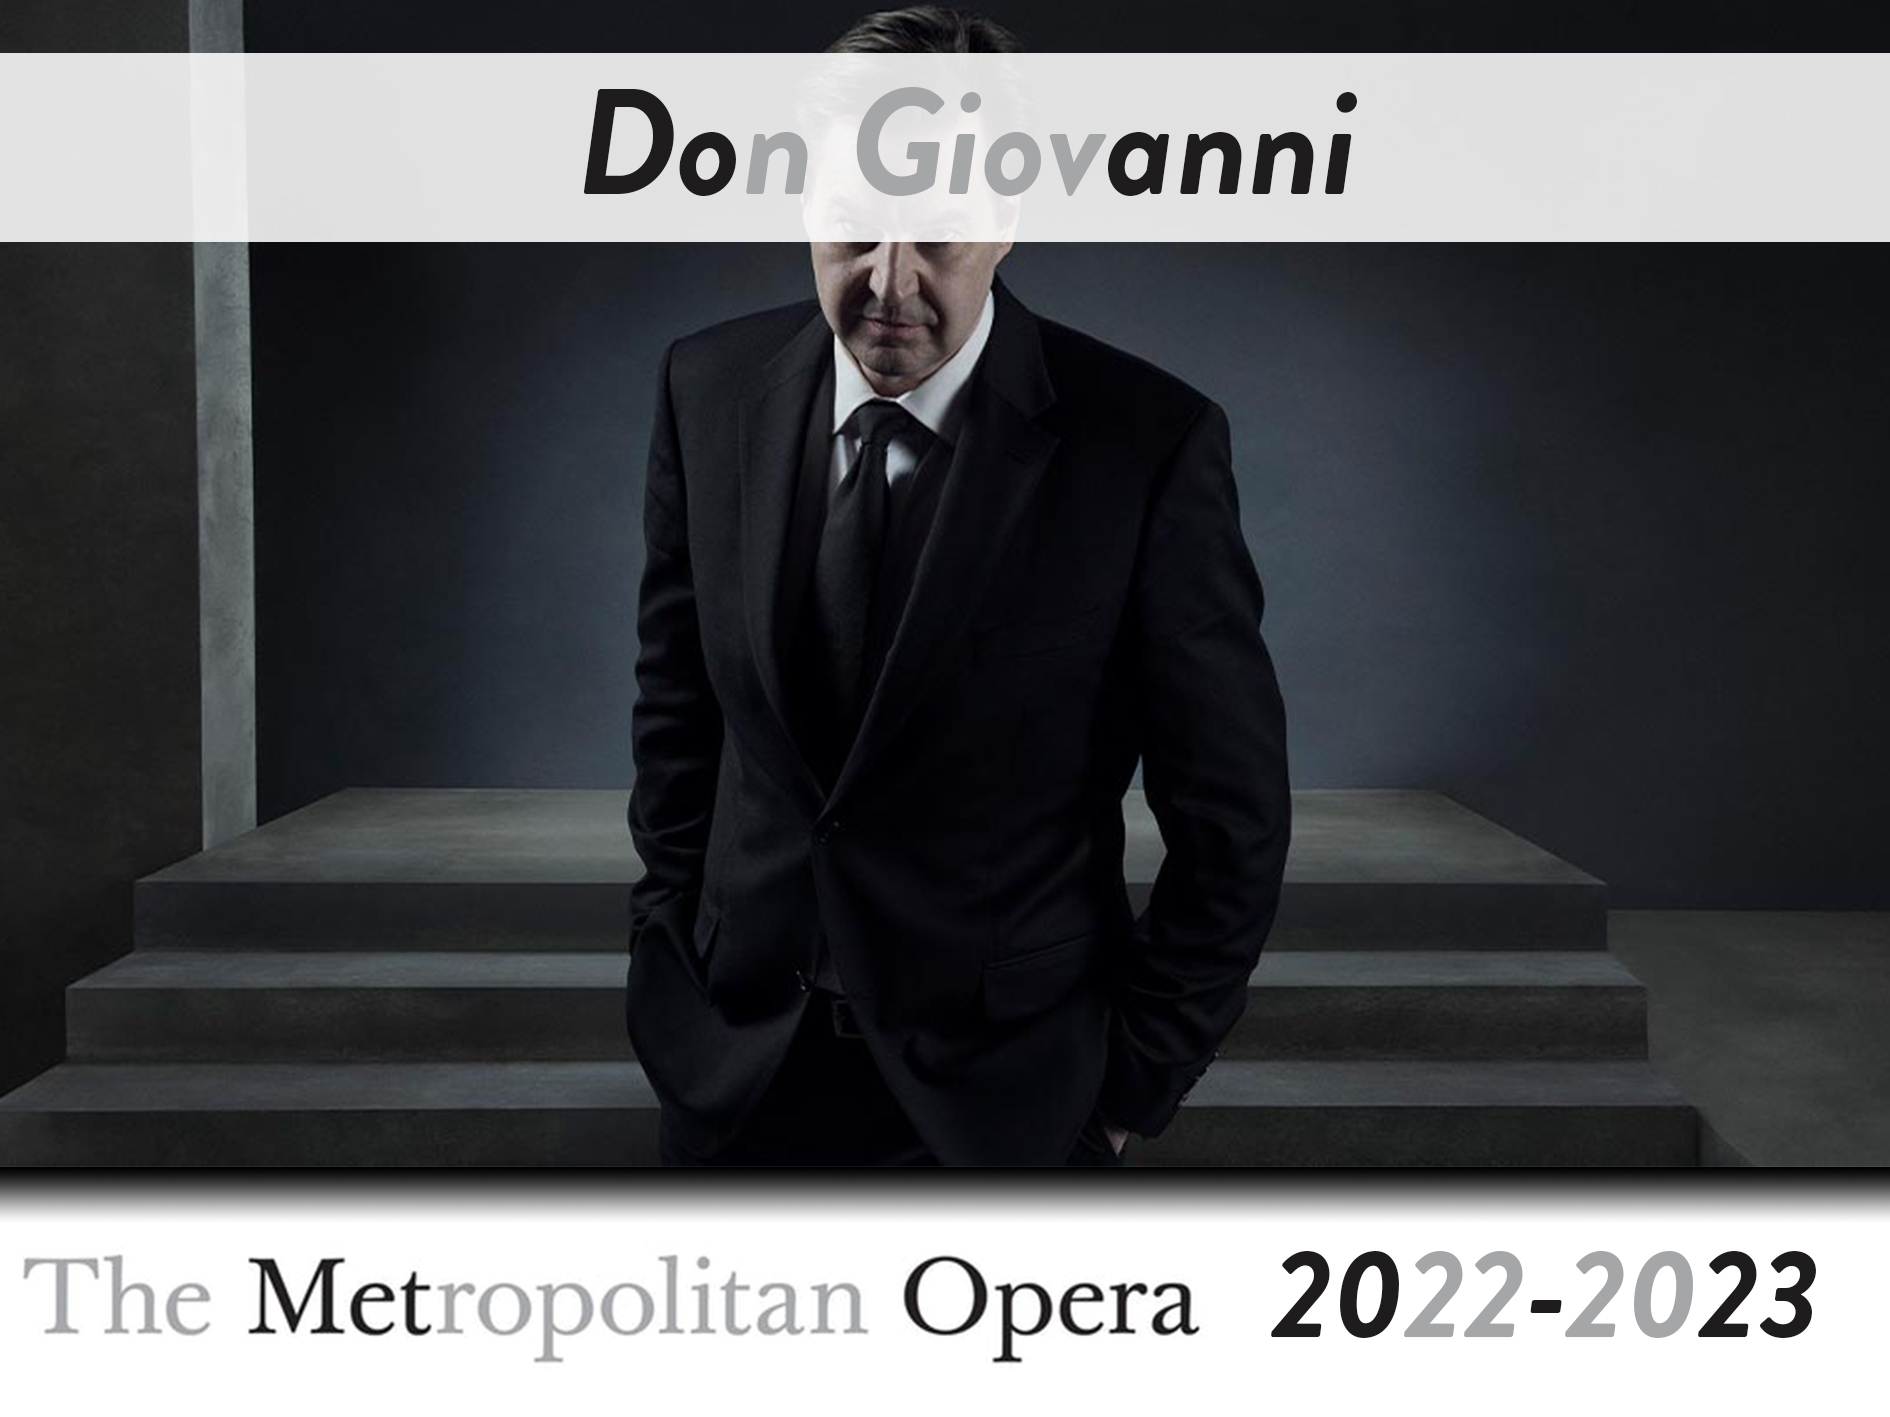 Met Opera - Don Giovanni Field Trip